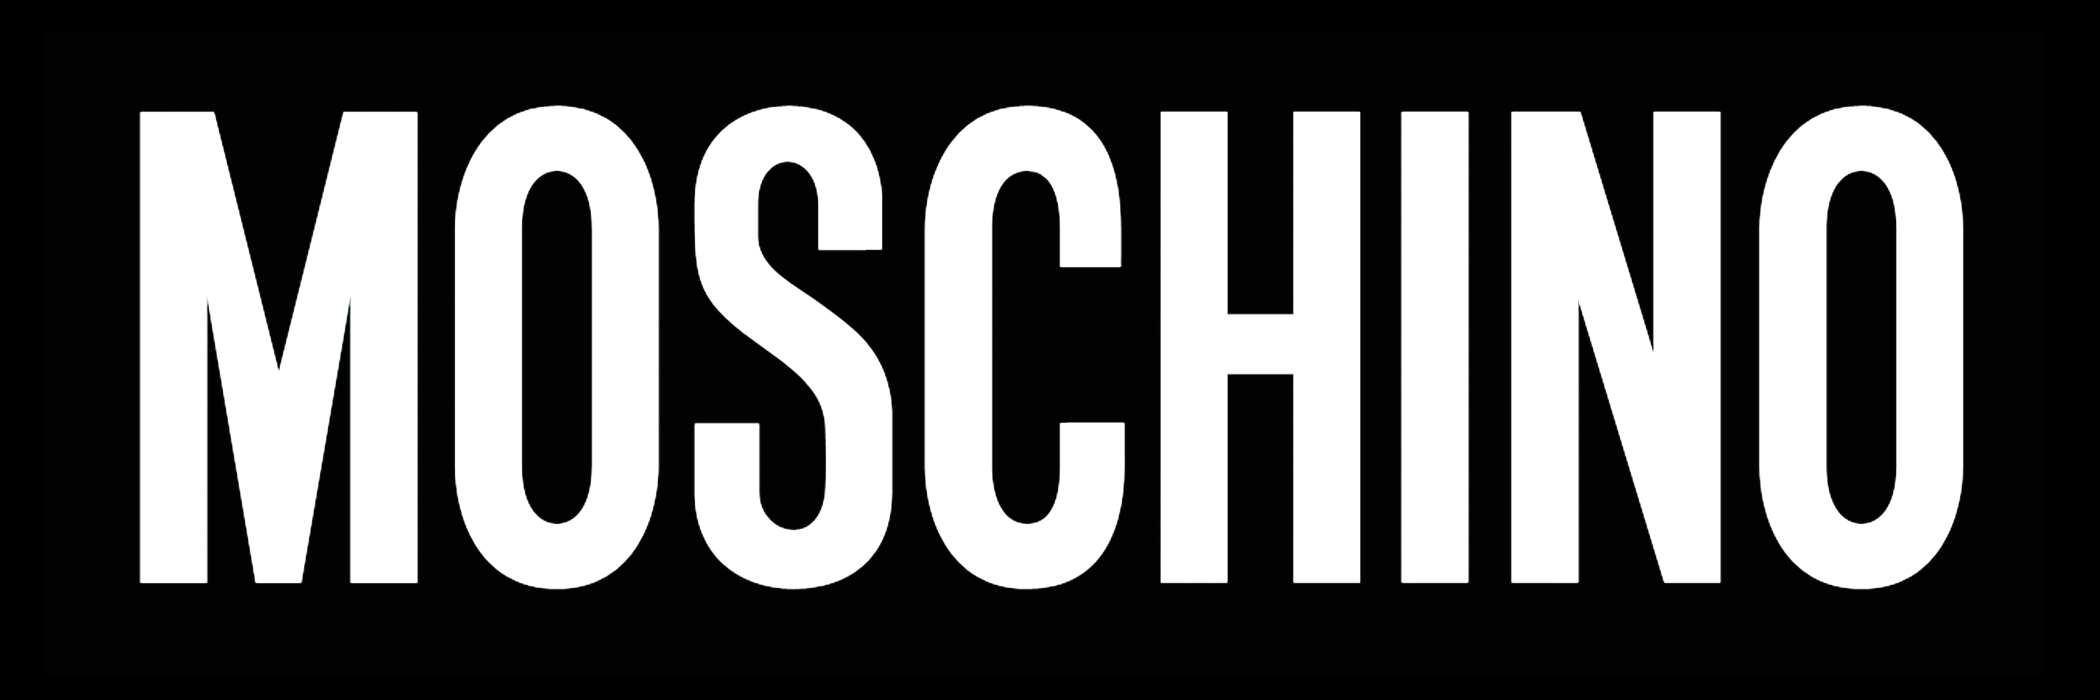 Moschino Logo - Moschino – Logos Download